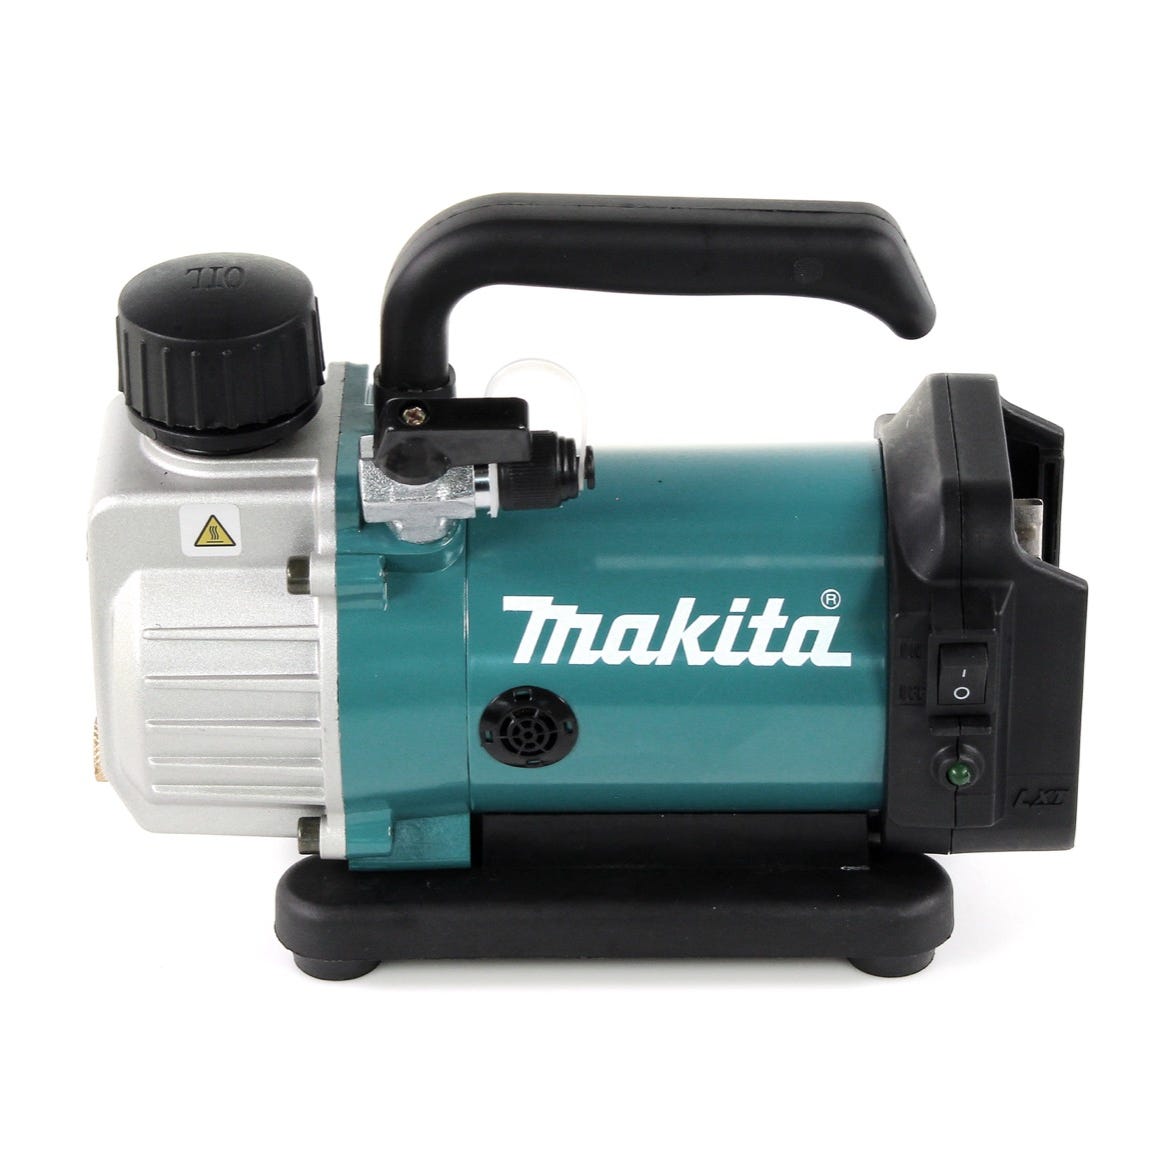 Makita DVP 180 F1 Pompe à vide sans fil 18 V + 1x Batterie BL 1830 3,0 Ah - sans Chargeur 1